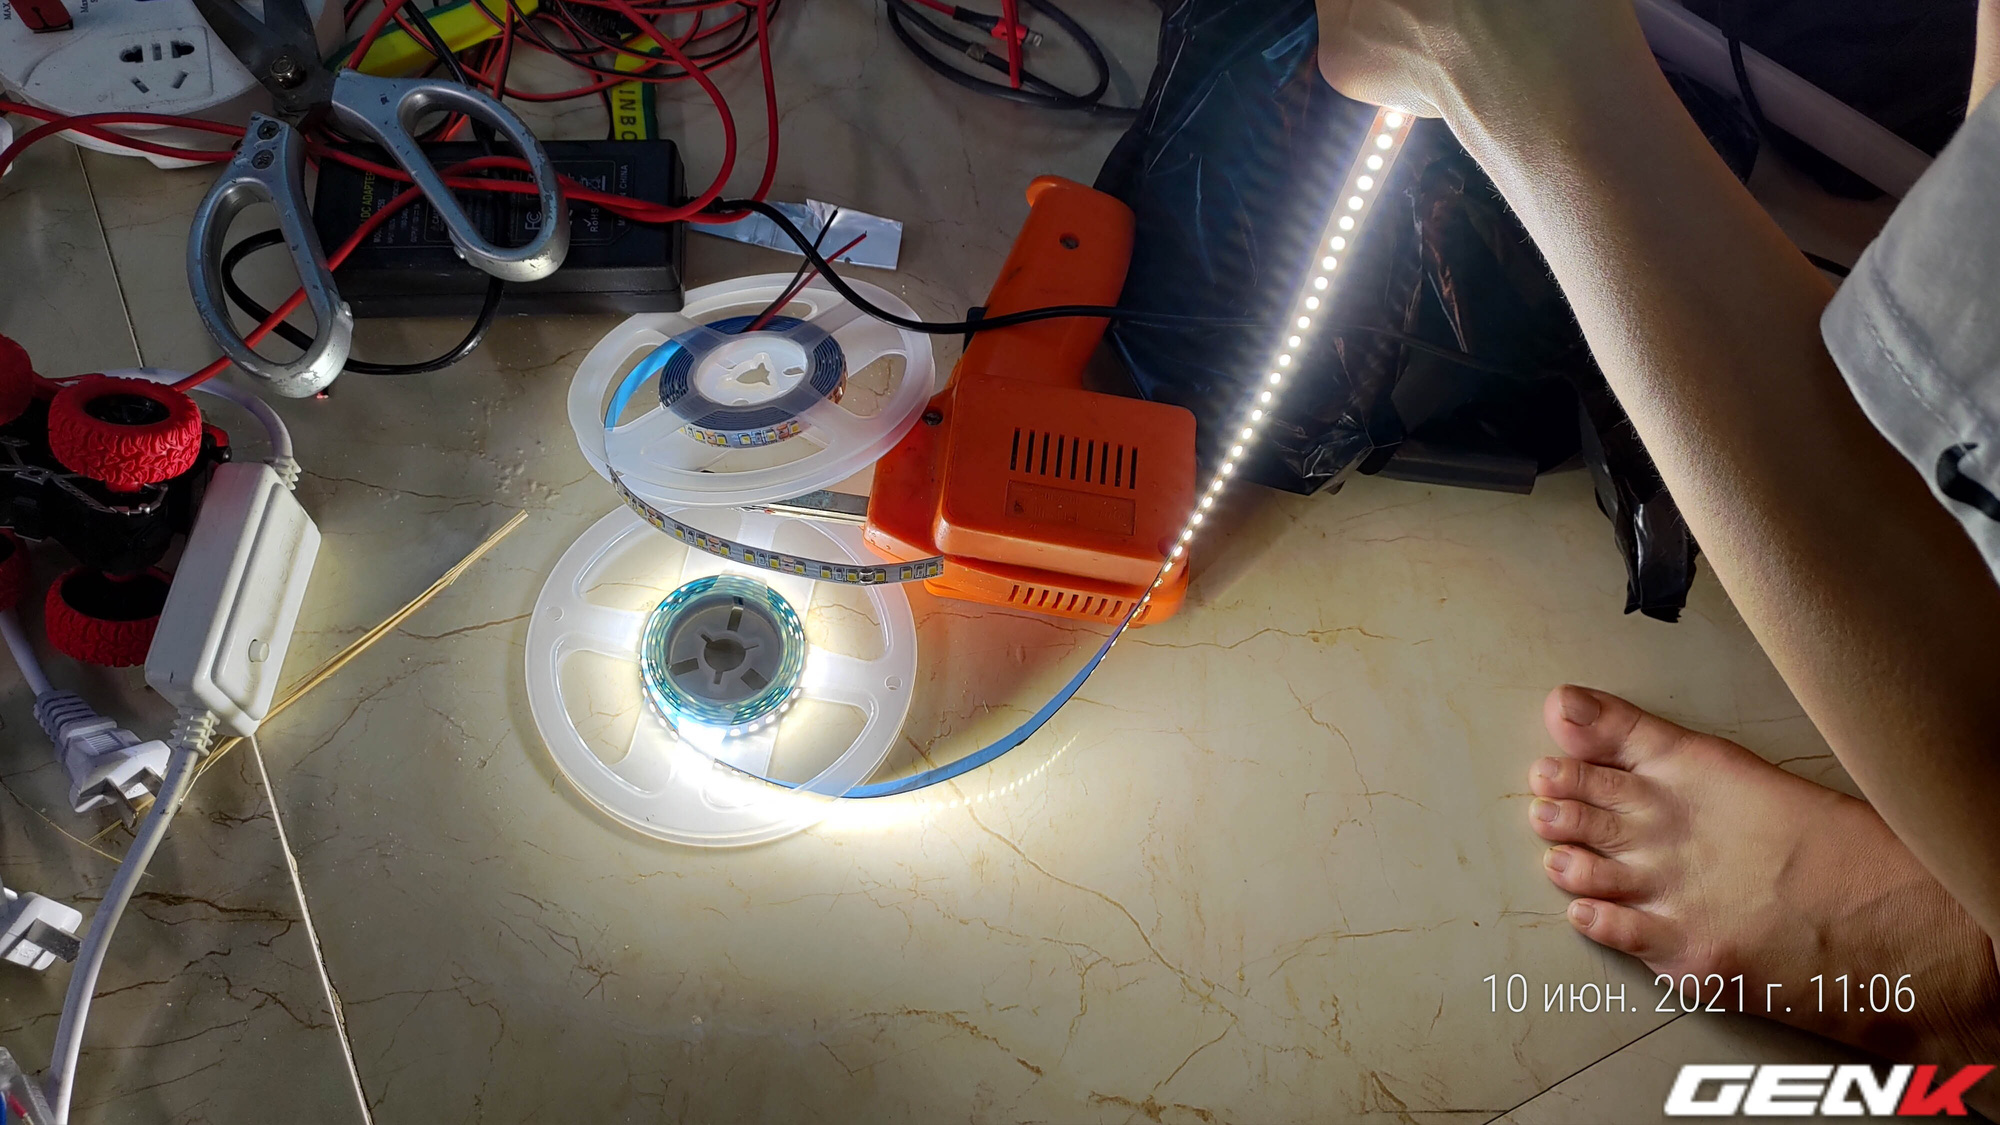 Tự lắp đèn LED tủ bếp để khắc phục đứng bếp bị tối và sấp bóng: cải thiện ánh sáng với chi phí thấp nhưng kết quả thì cực mỹ mãn! - Ảnh 18.